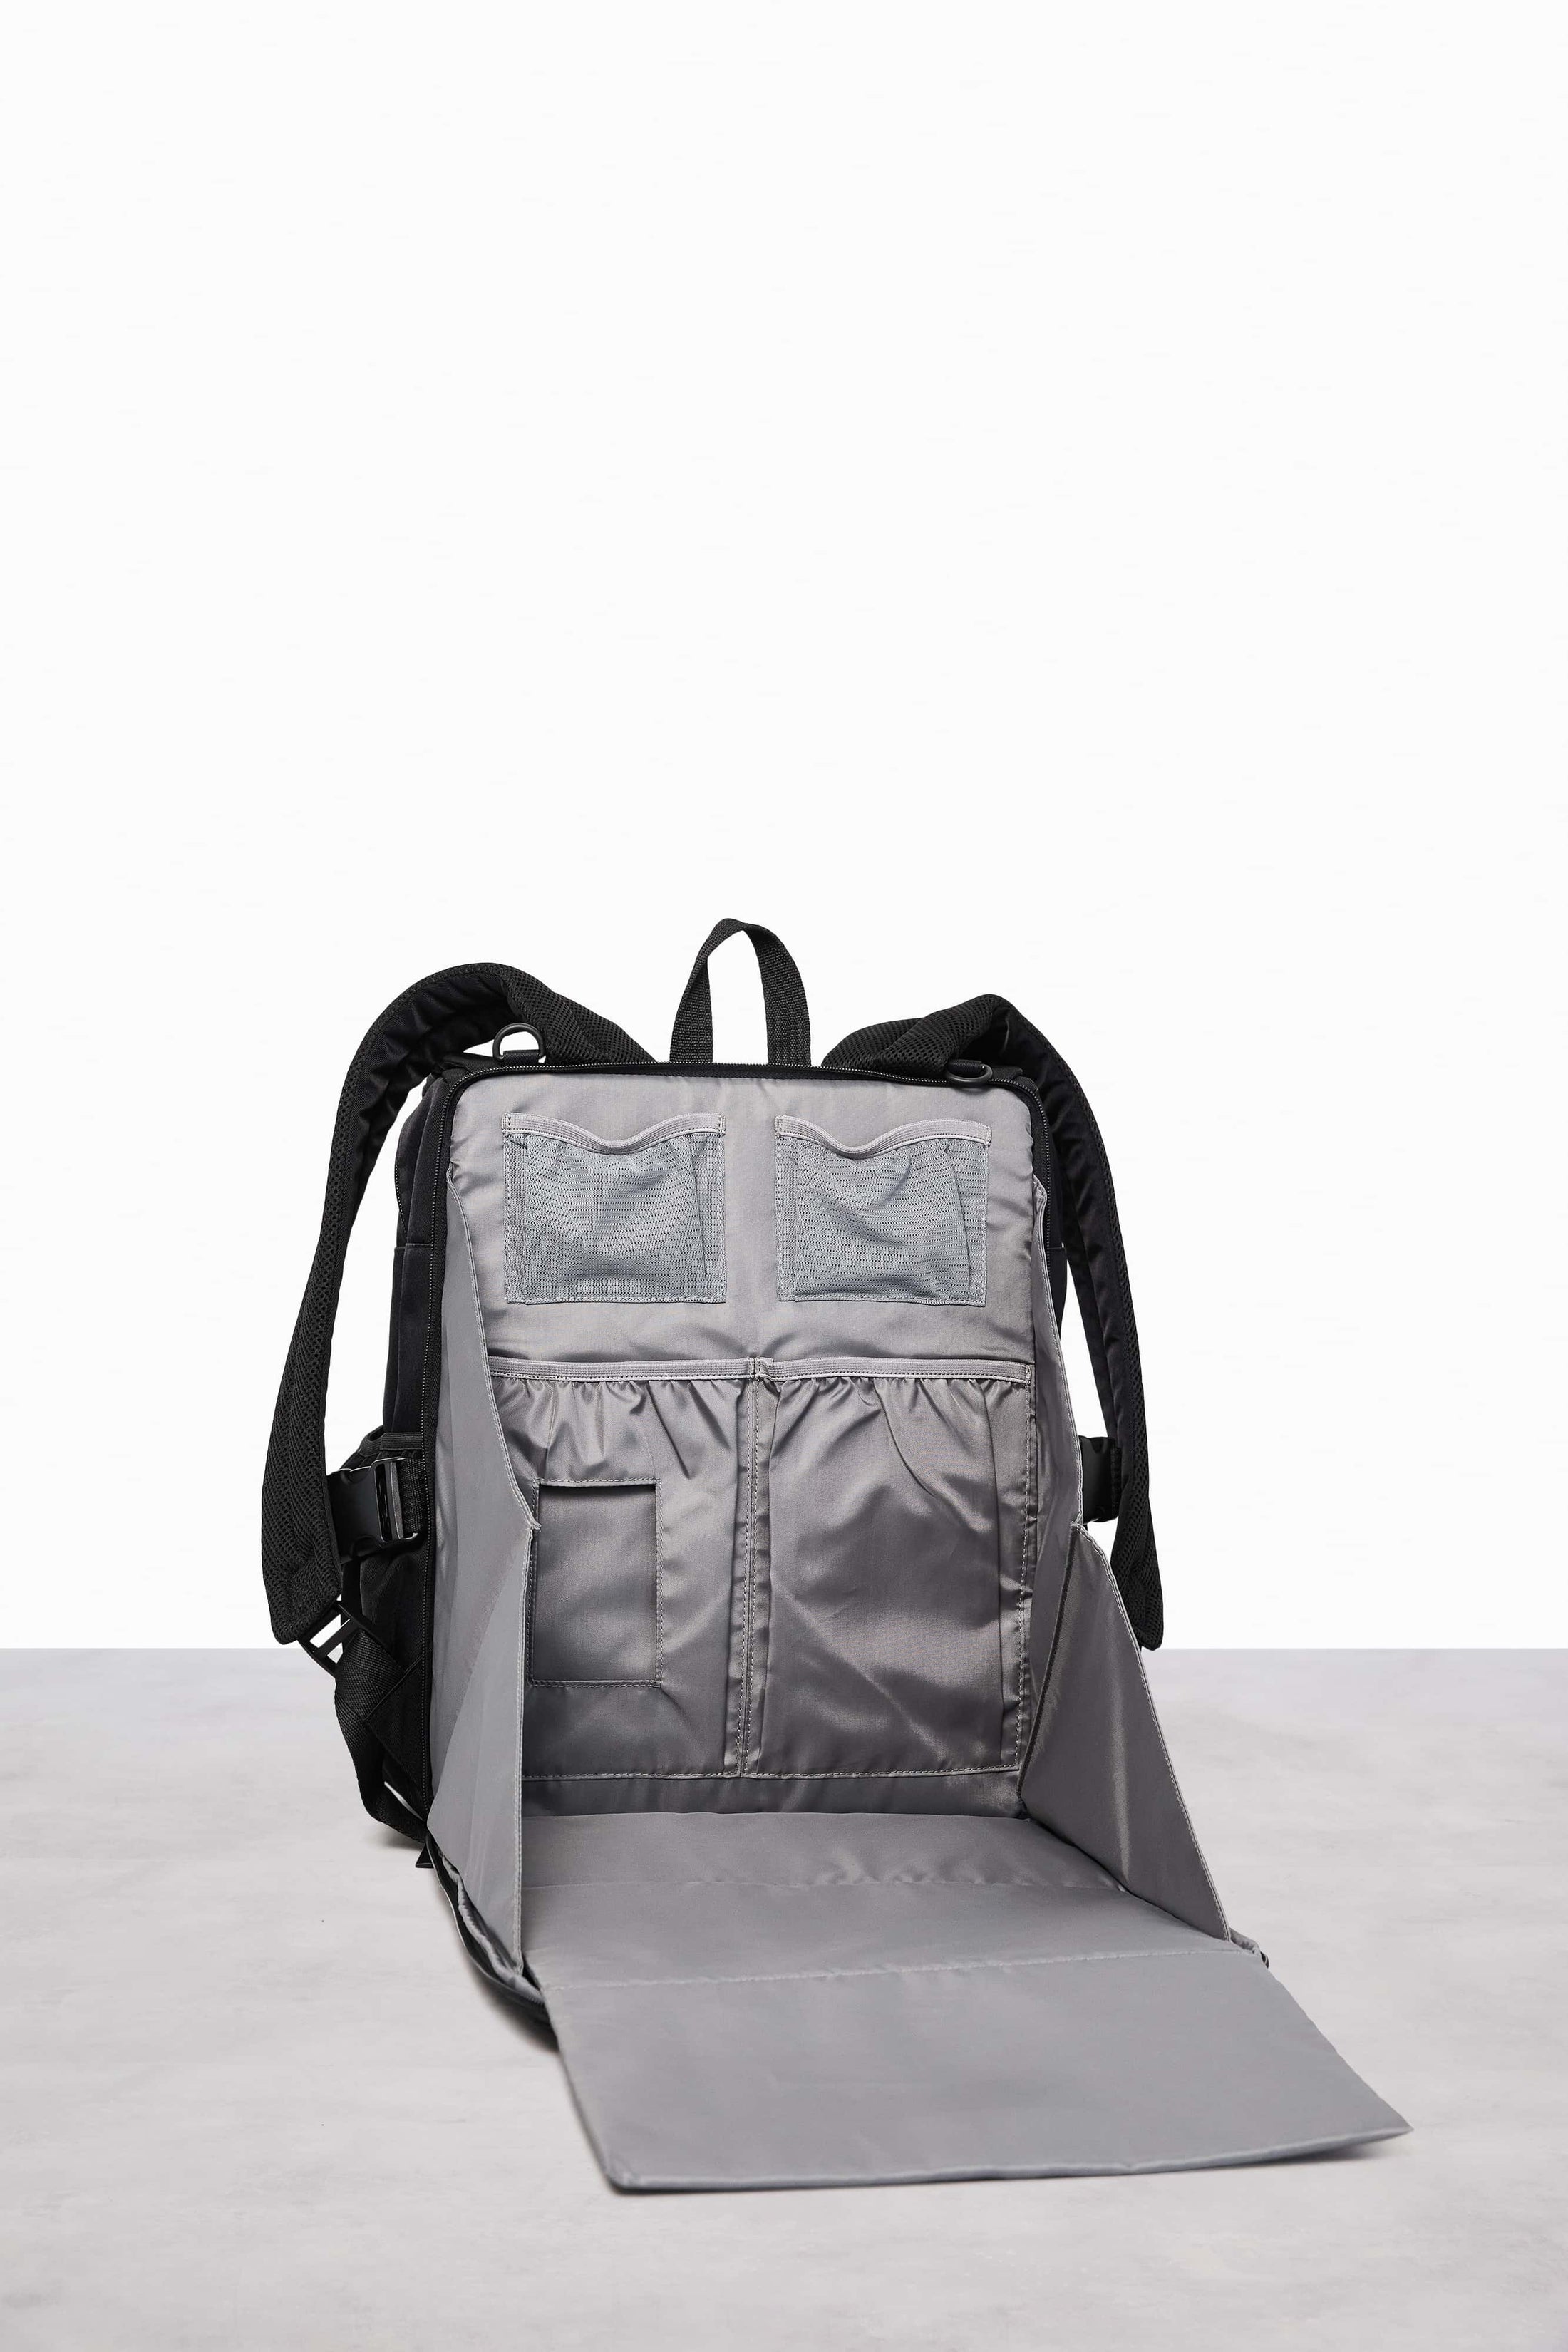 BÉIS 'The Ultimate Diaper Backpack' in Black - Diaper Bag & Diaper Backpack